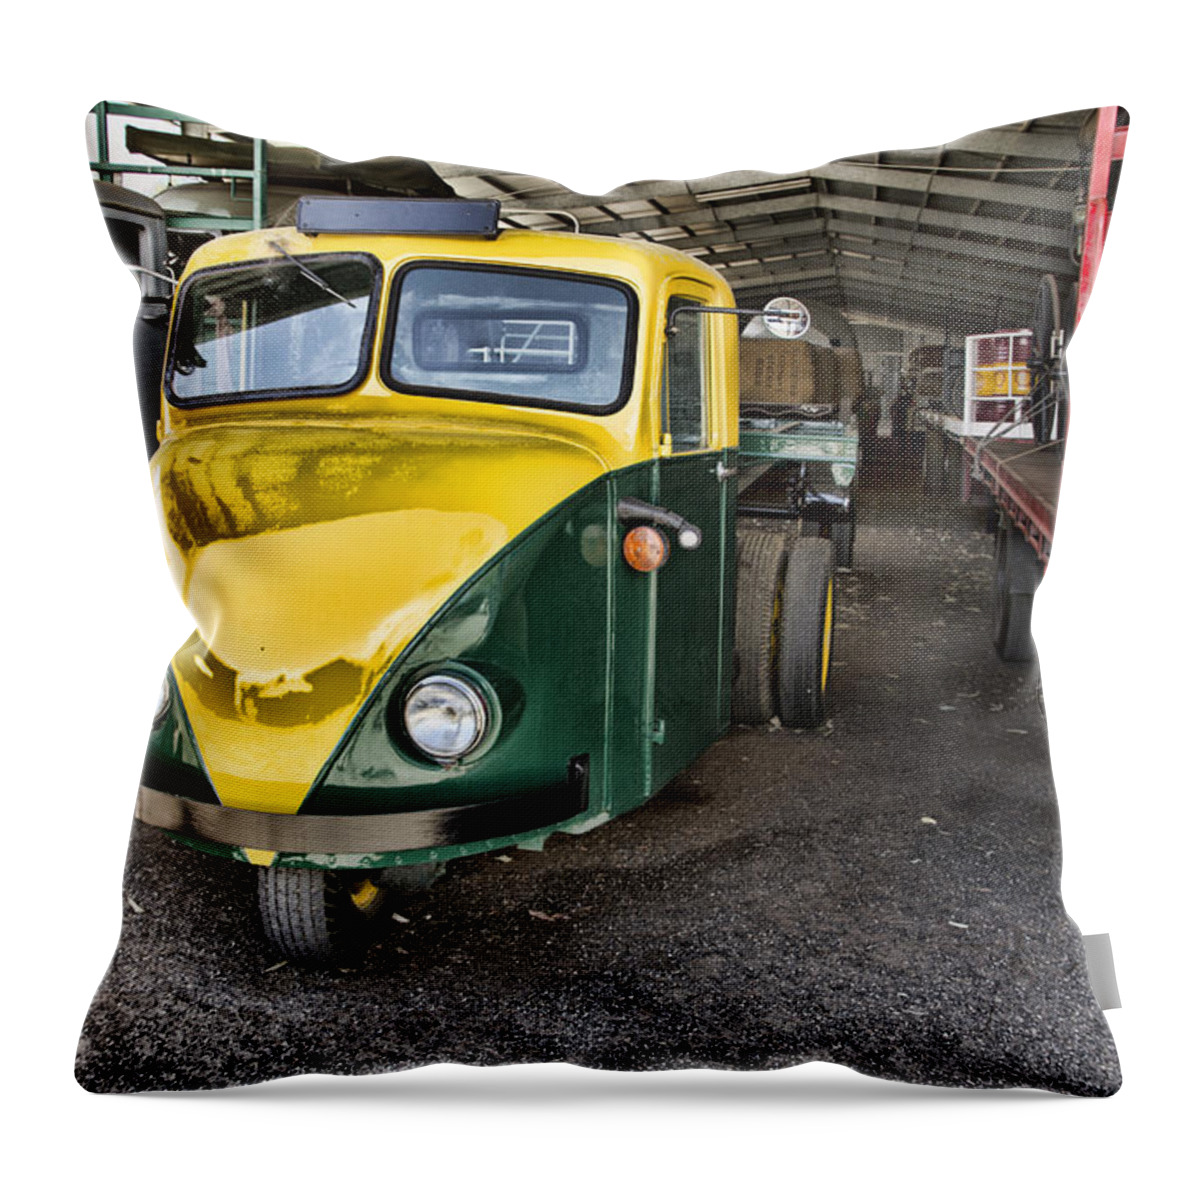 3 Wheel Truck Throw Pillow featuring the photograph 3 Wheeler Truck by Douglas Barnard